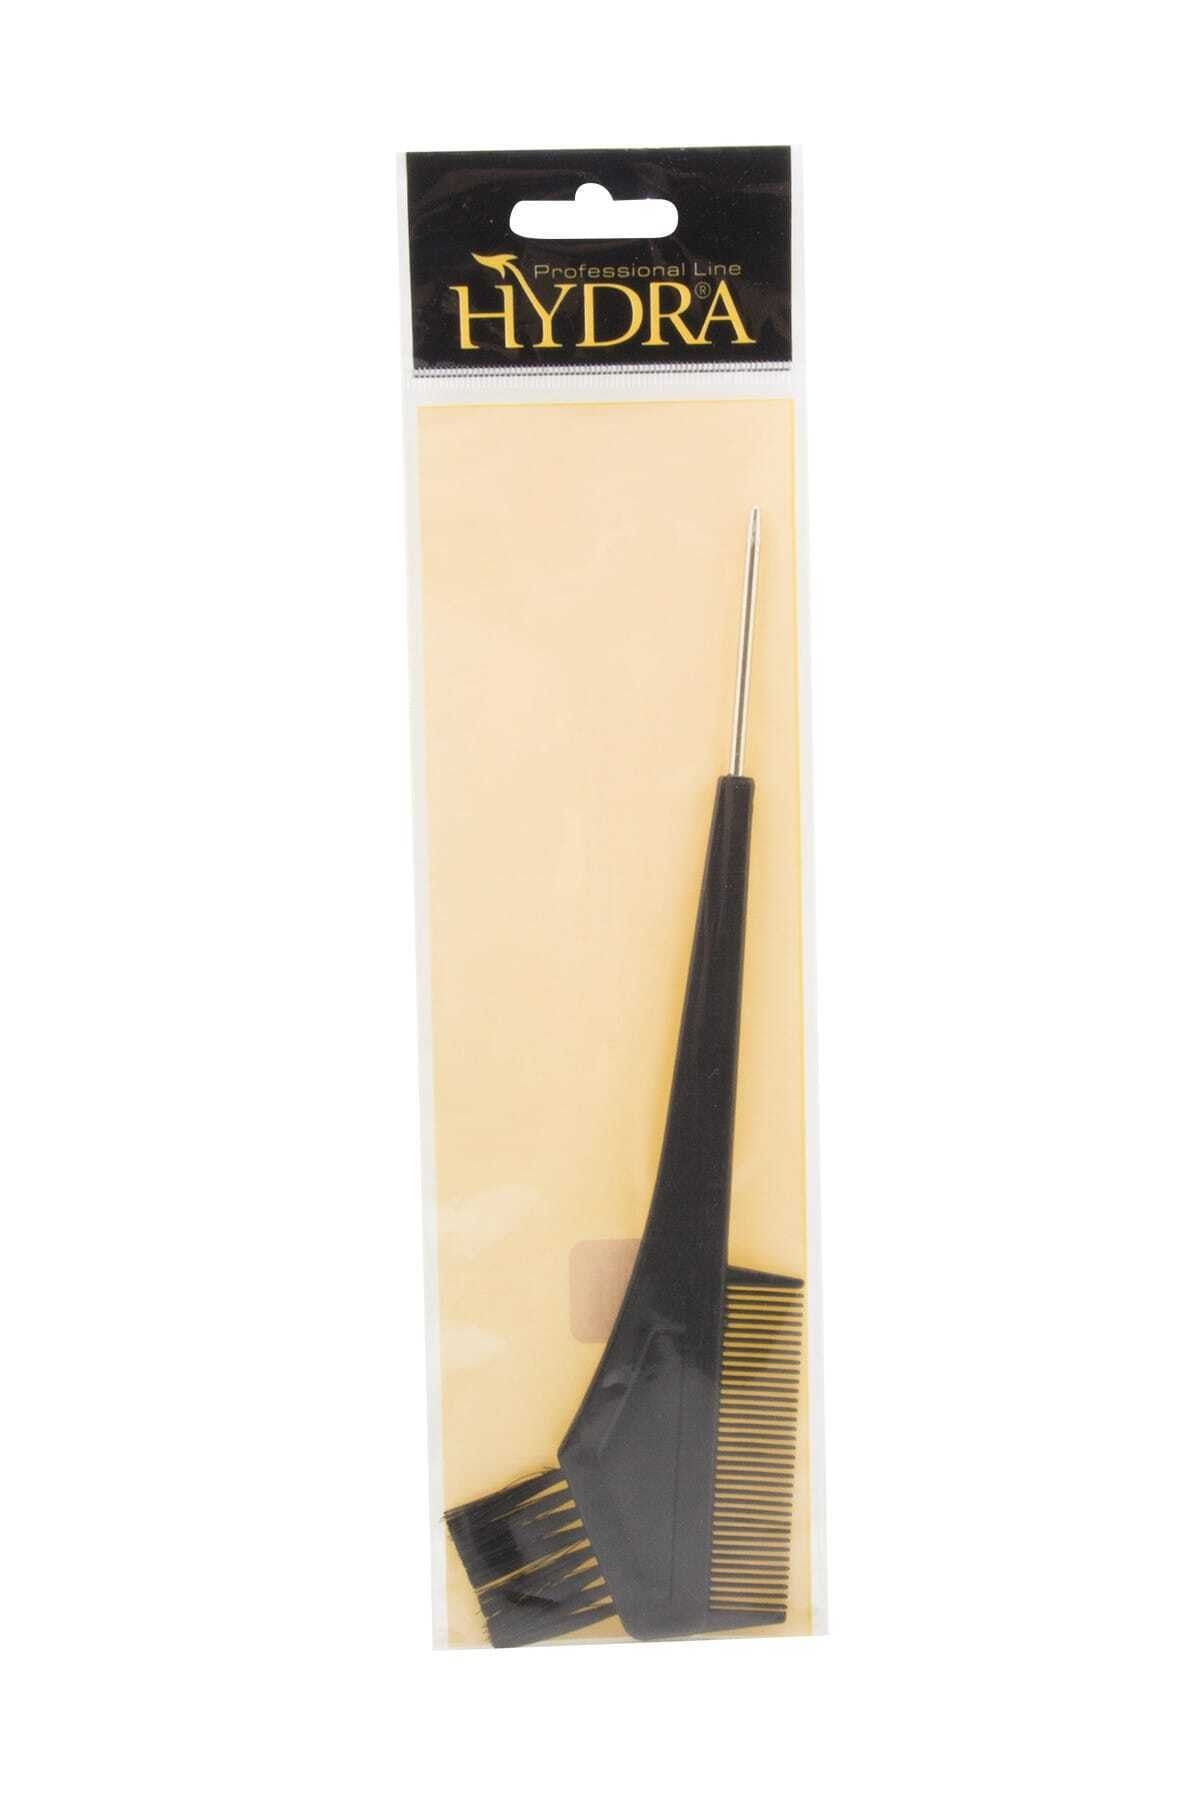 Hydra Professional Line Saç Boya Fırçası - Hydra Saç Boya Fırçası Hd-2193 8697888060732